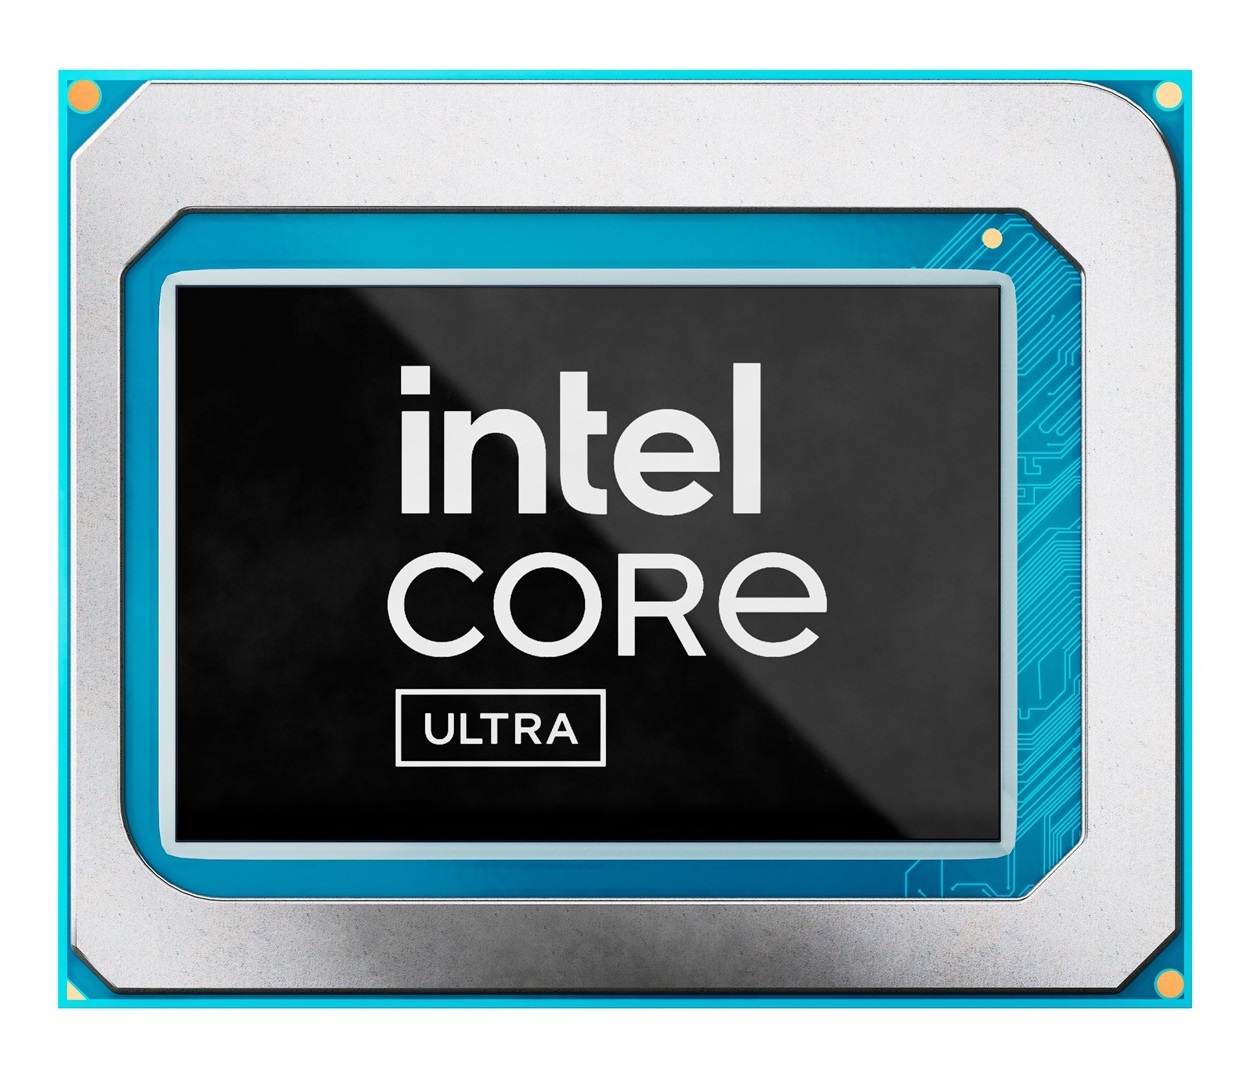 Intel mengatakan masalah manufaktur menghambat penjualan Core Ultra yang panas